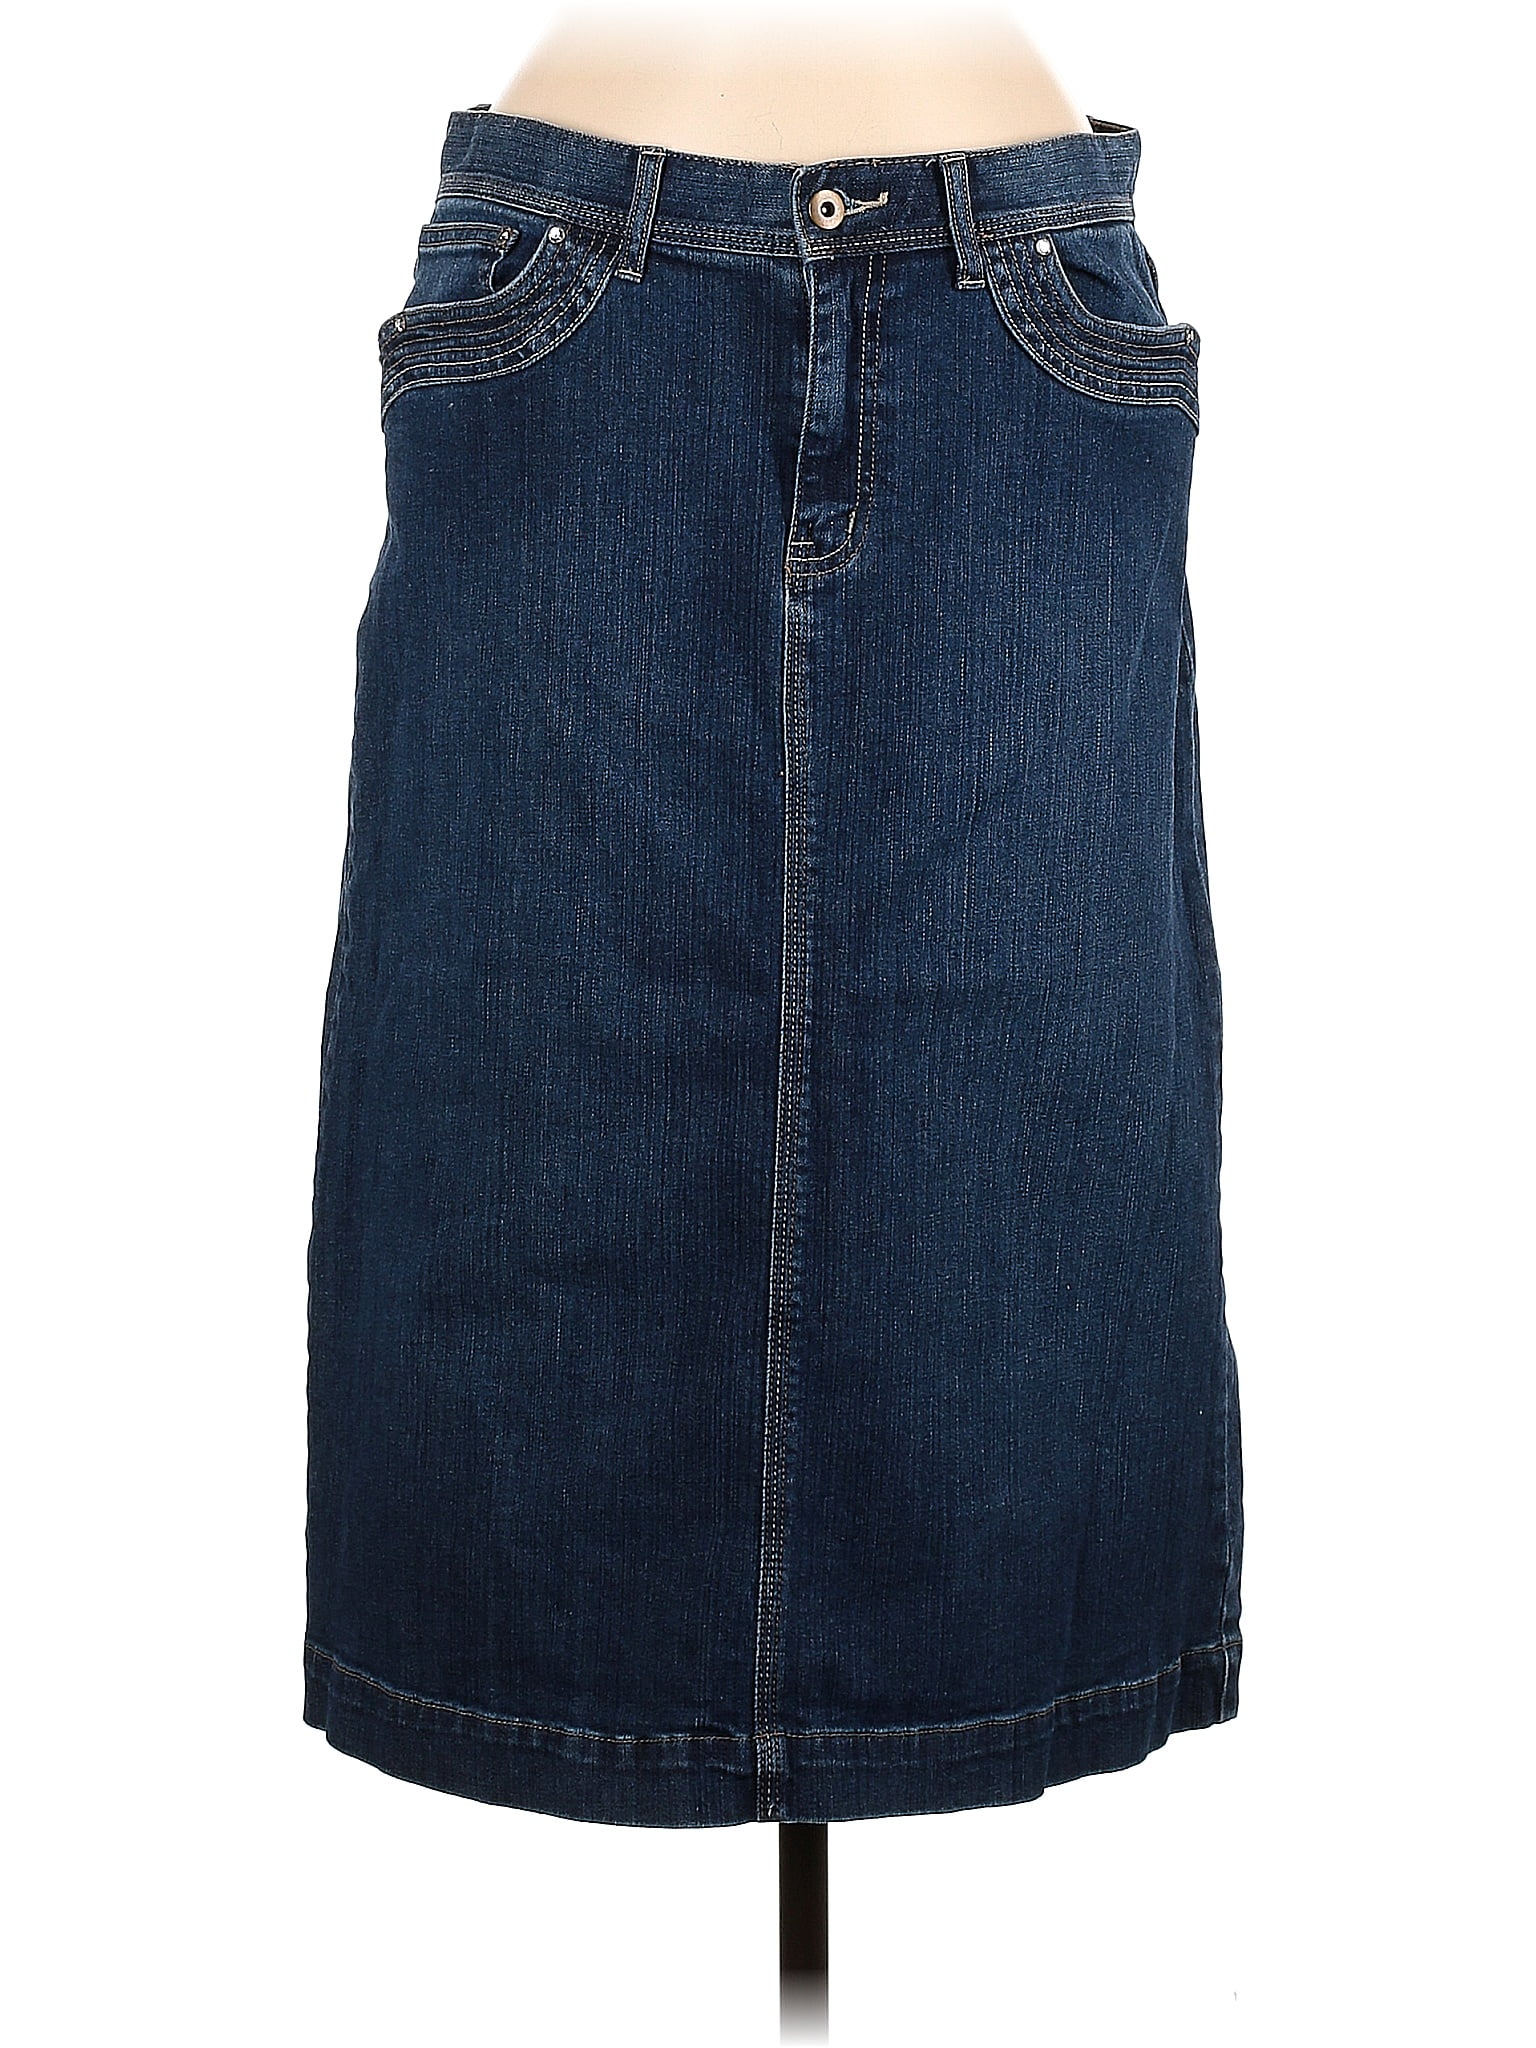 Christopher & Banks Blue Denim Skirt Size 8 - 56% off | thredUP